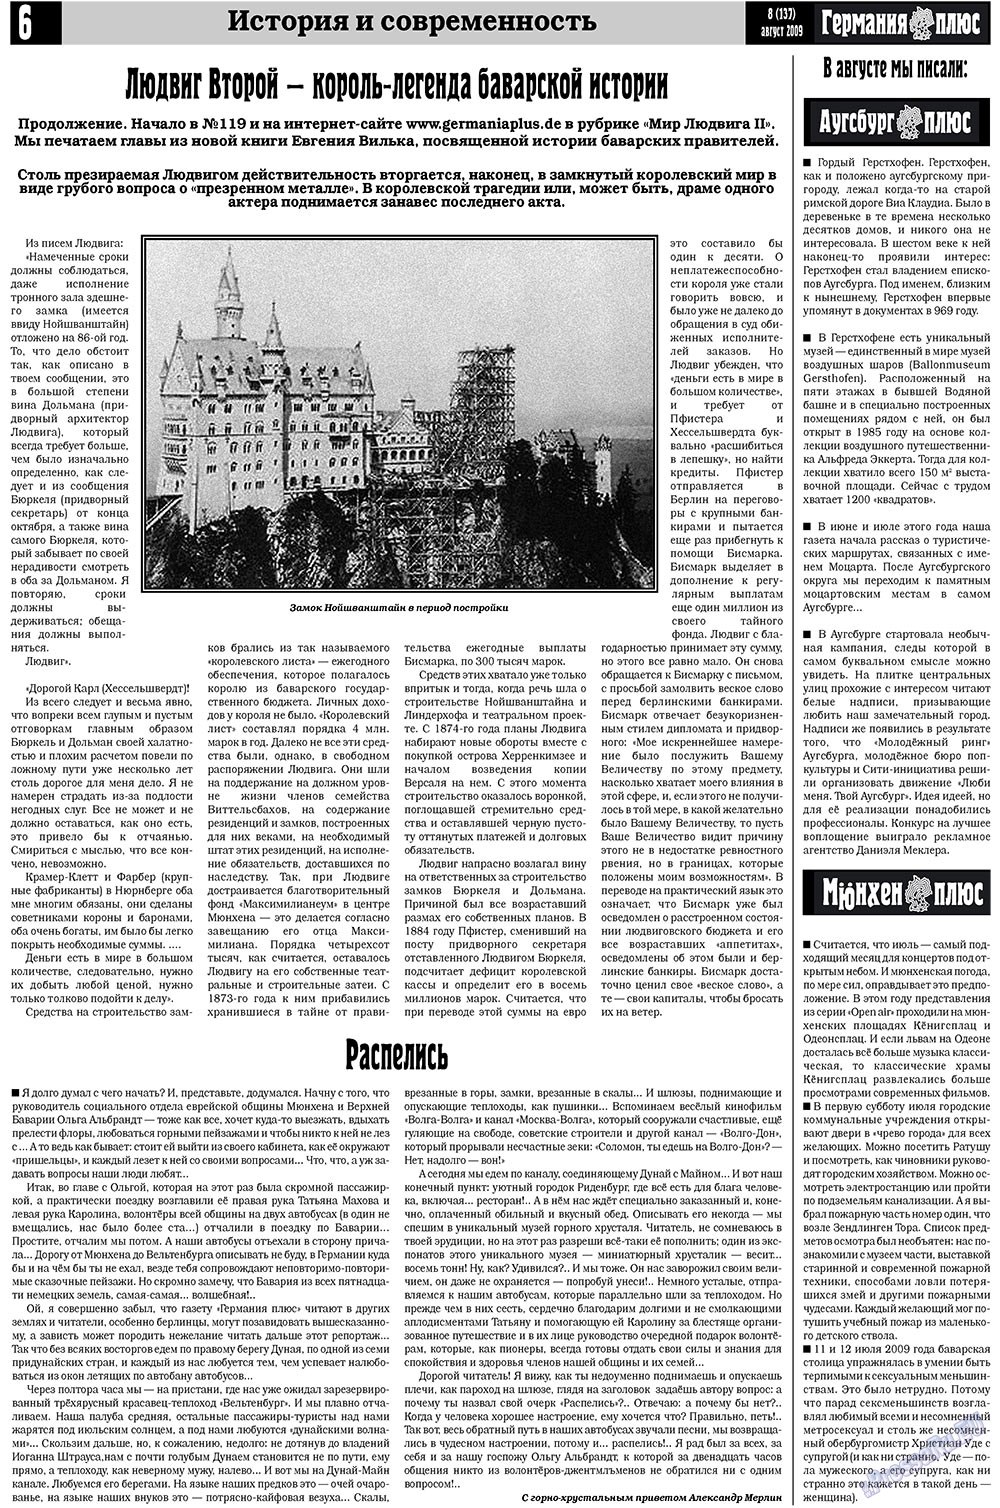 Германия плюс (газета). 2009 год, номер 8, стр. 6